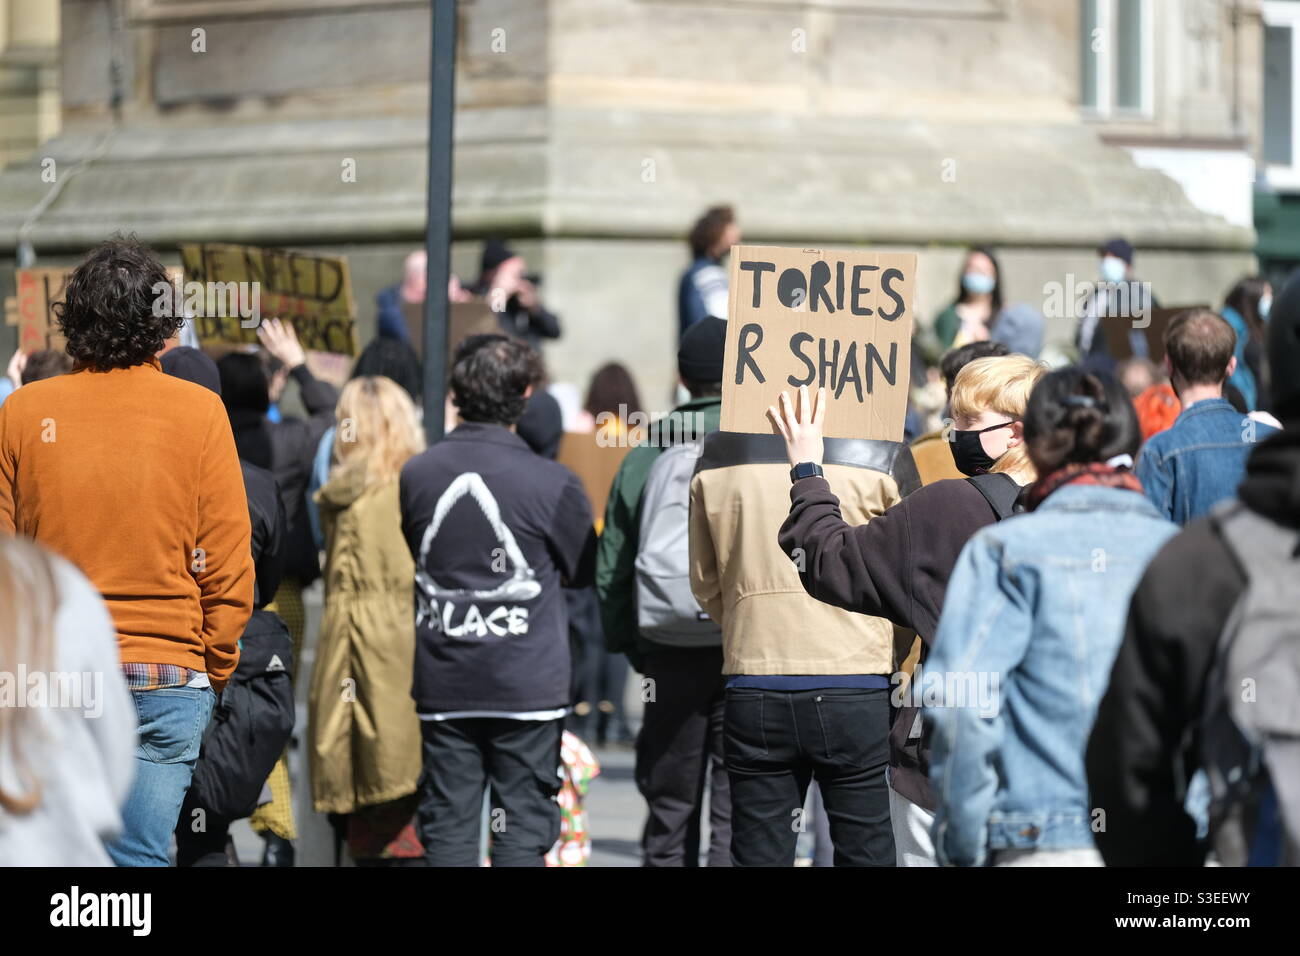 3 aprile 2021 - Newcastle, Regno Unito: I manifestanti si riunono a Newcastle nell'ambito della giornata nazionale di azione ‘Kill the Bill’ contro l'aumento dei poteri di polizia. Foto Stock